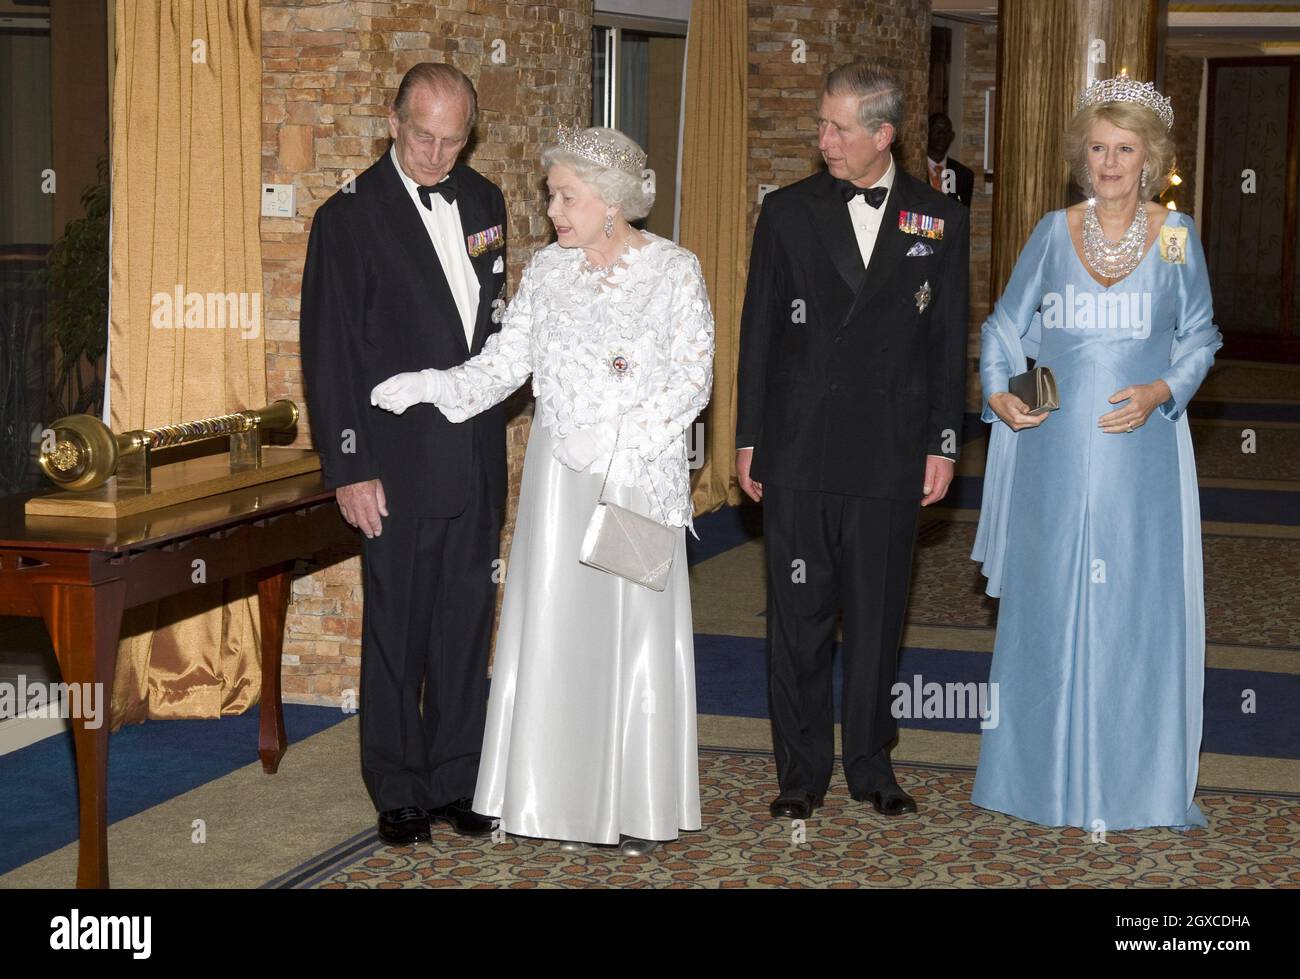 La reine Elizabeth ll, le prince Philip, duc d'Édimbourg, Camilla, duchesse de Cornouailles et le prince Charles, prince de Galles, assistent au banquet des chefs de gouvernement du Commonwealth à Kampala, en Ouganda Banque D'Images